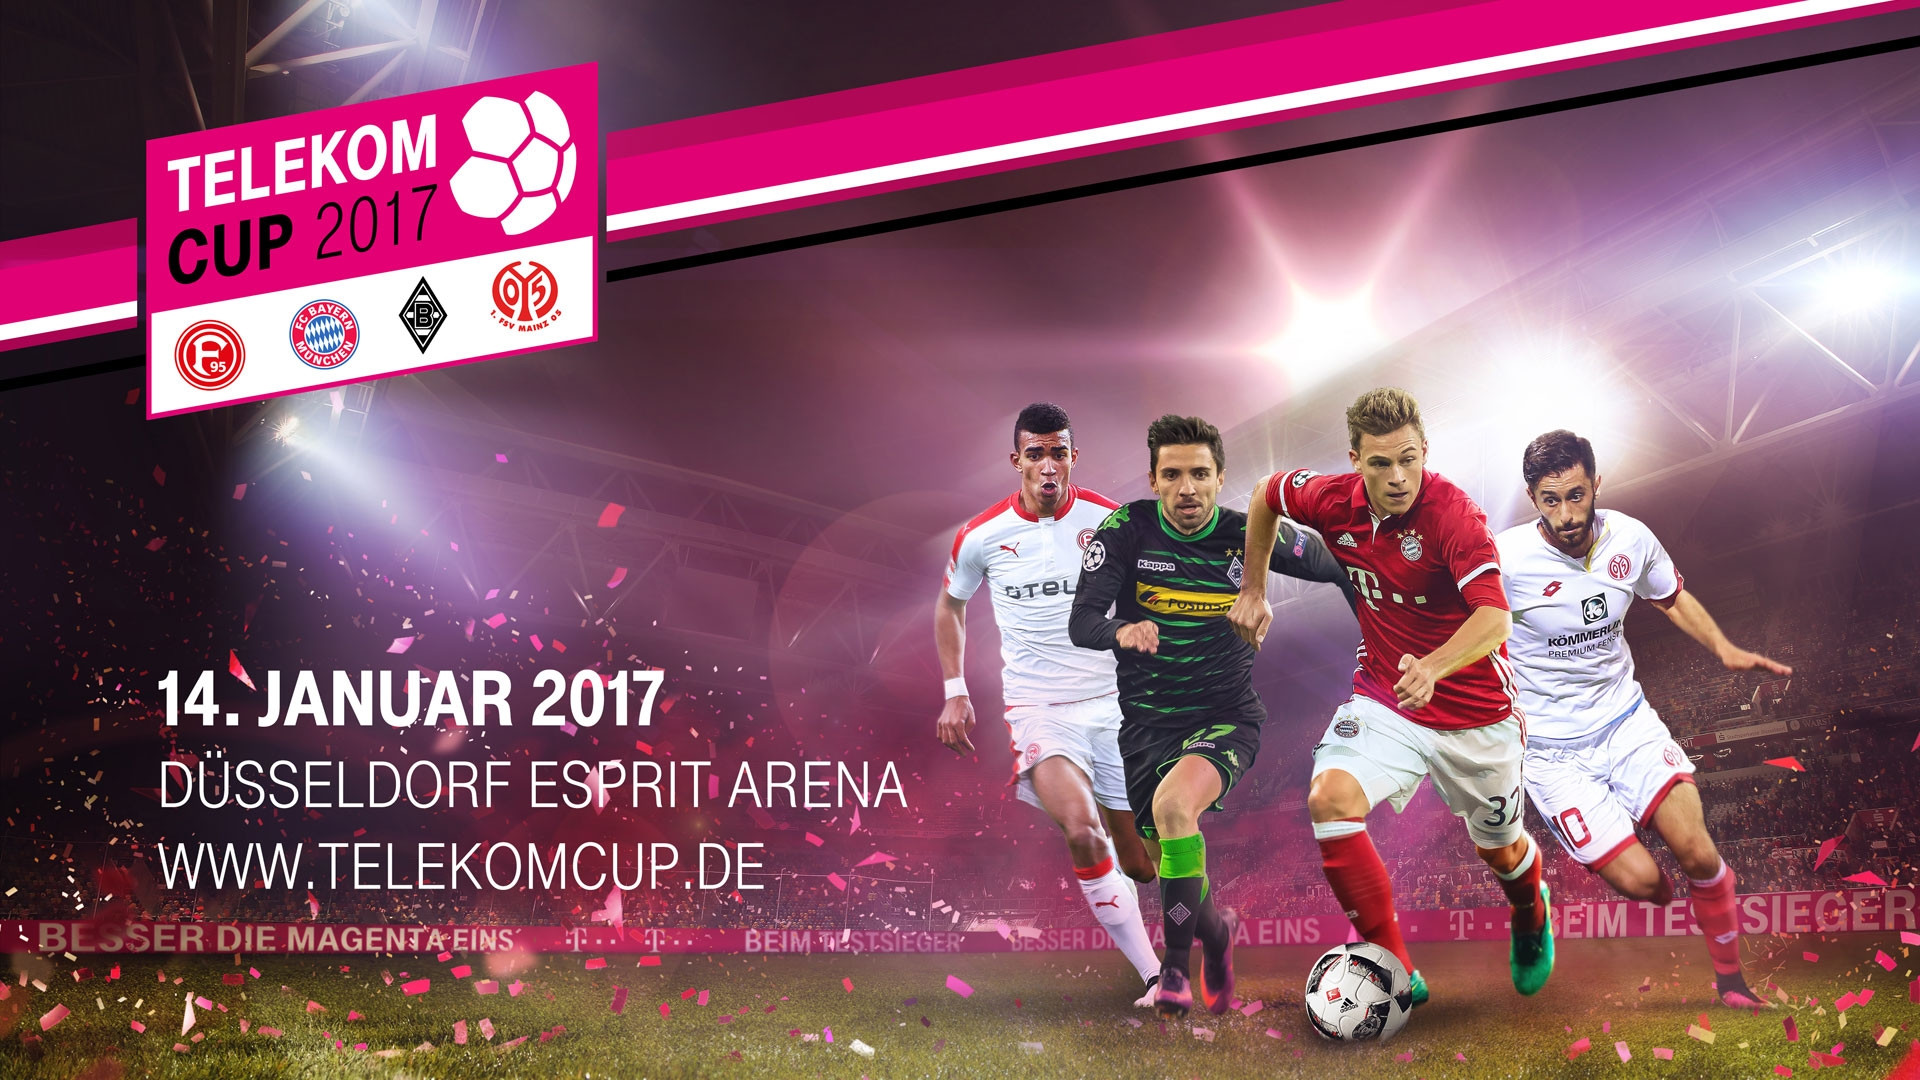 Telekom Geburtstagsgeschenk 2018
 FCB startet beim Telekom Cup 2017 FC Bayern München